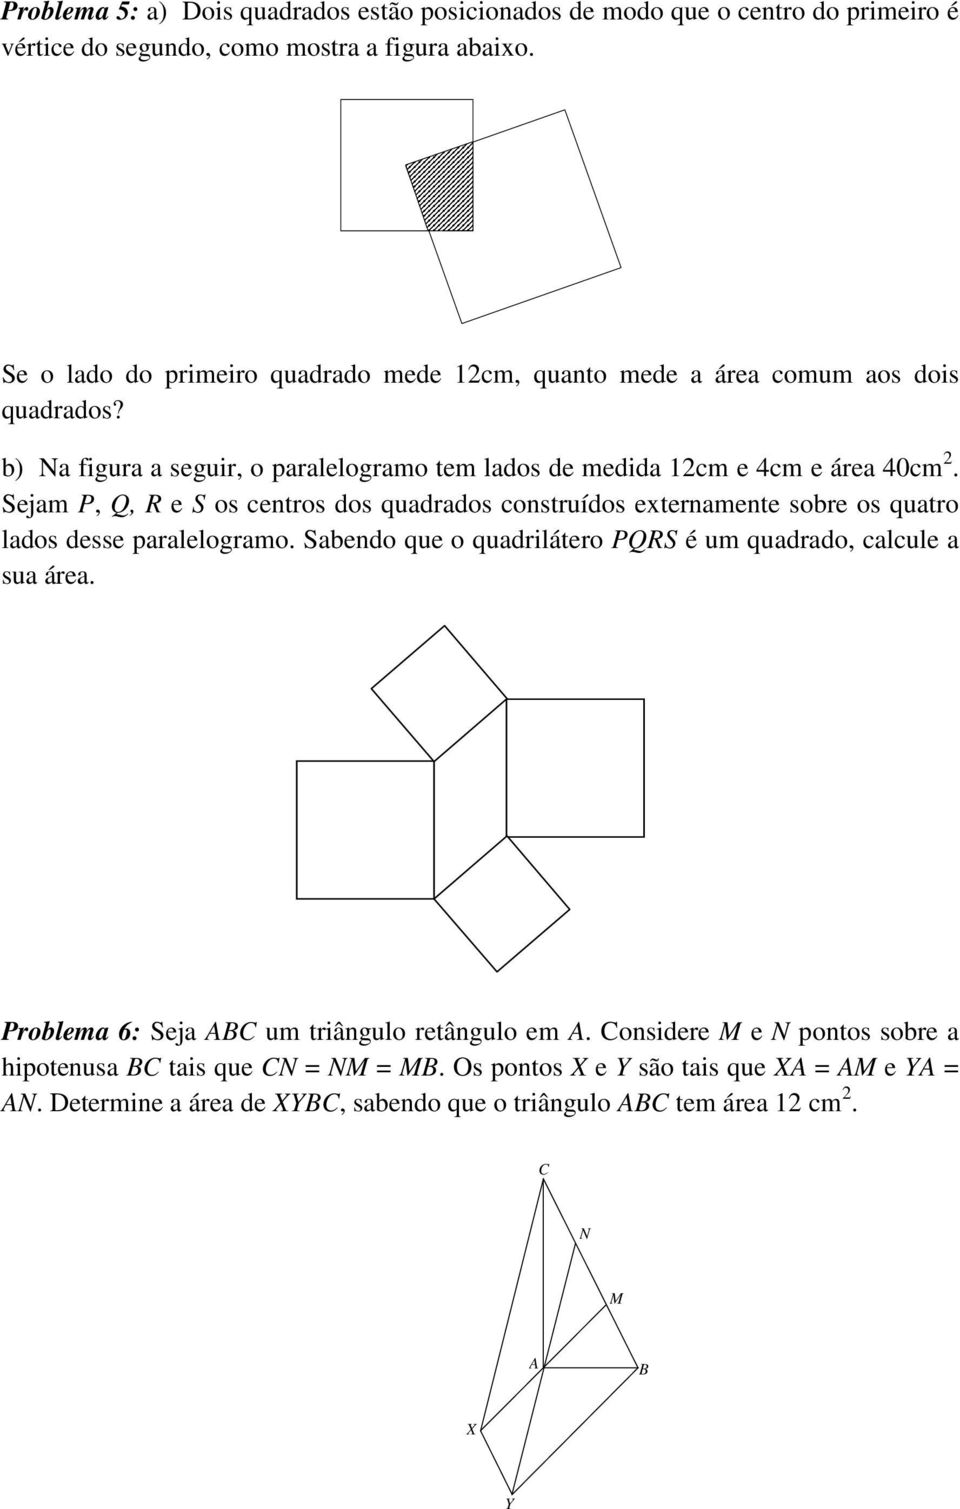 Sejam P, Q, R e S os centros dos quadrados construídos externamente sobre os quatro lados desse paralelogramo. Sabendo que o quadrilátero PQRS é um quadrado, calcule a sua área.